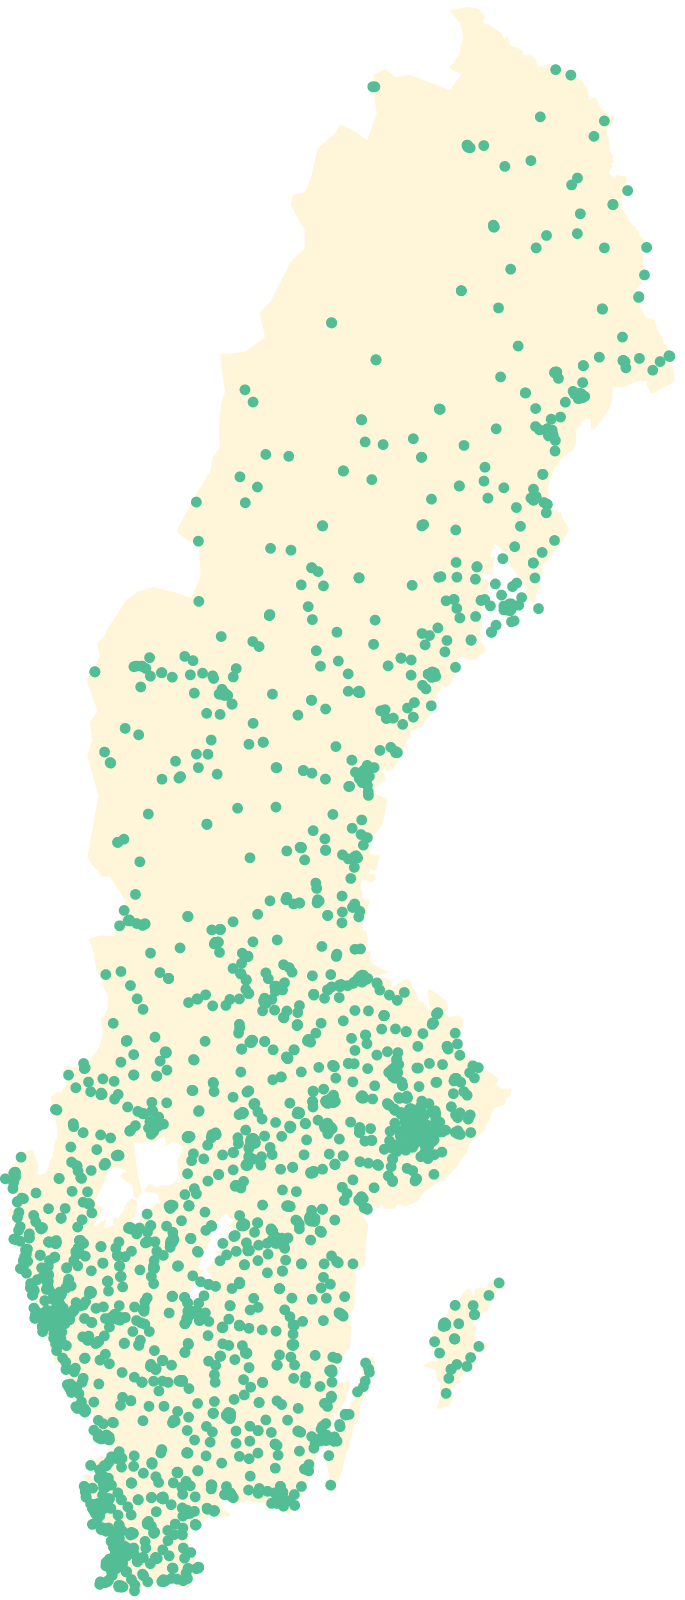 En siluett av Sverige med en prick för varje butik som fanns under 2021